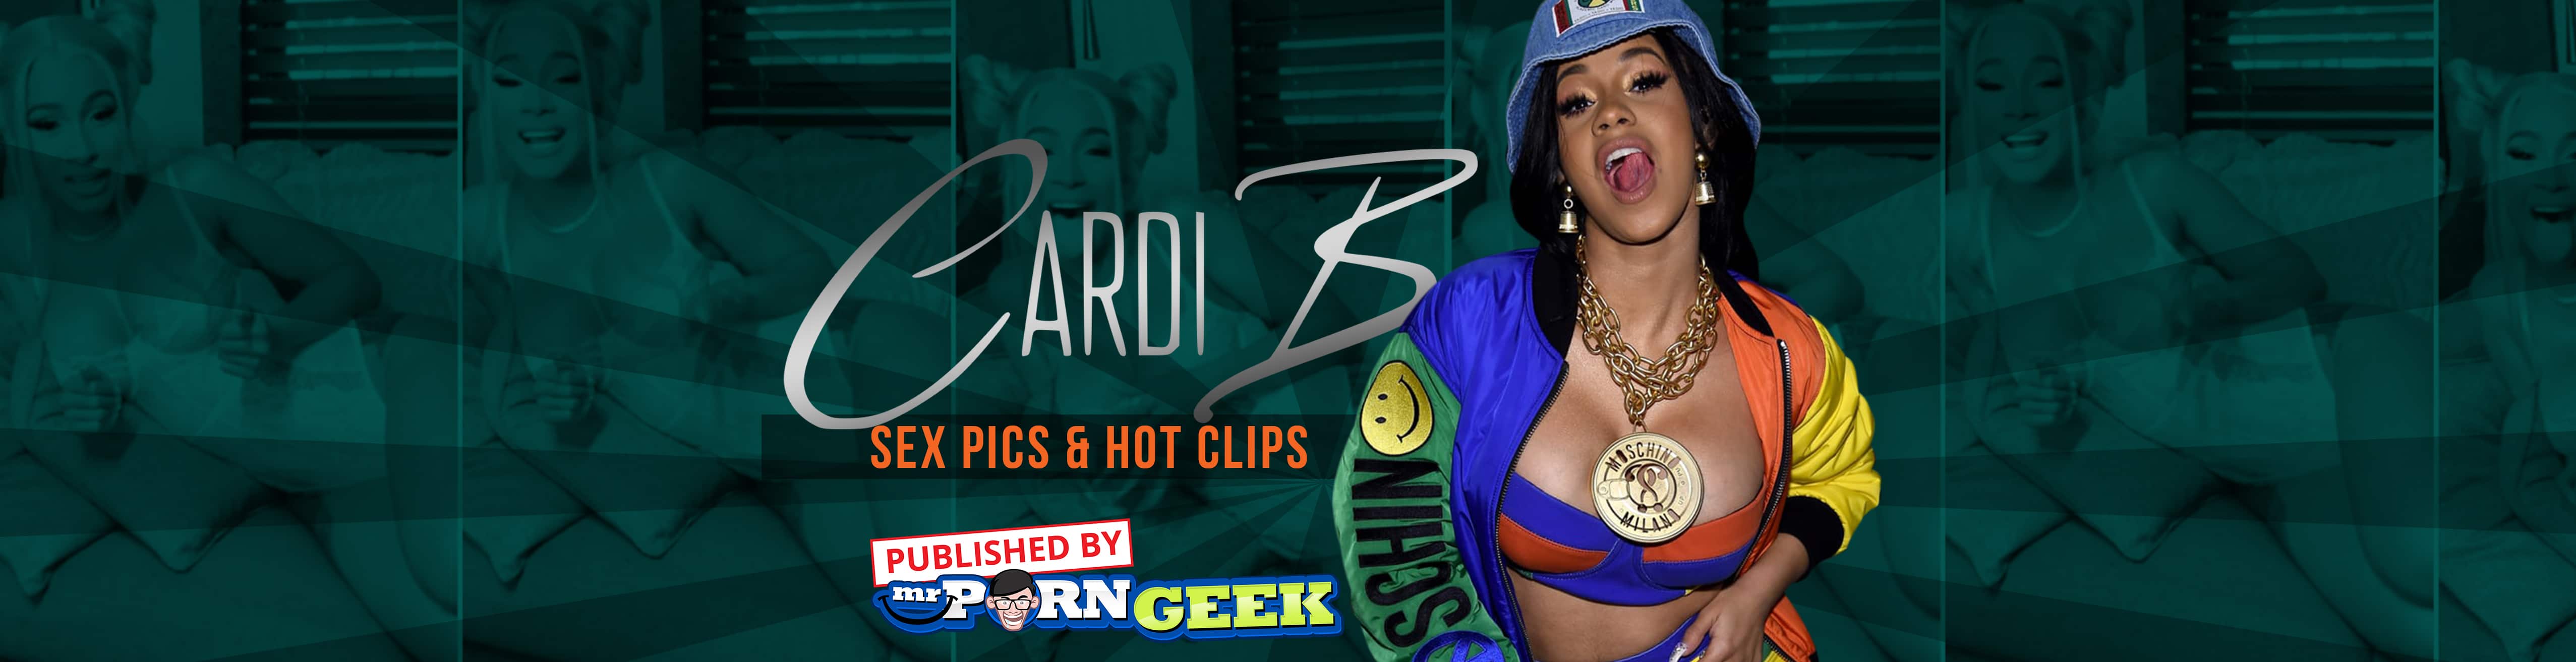 Rap Boobs - Find Cardi B Nudes, Sex Pics & Porn Clips On MrPornGeek